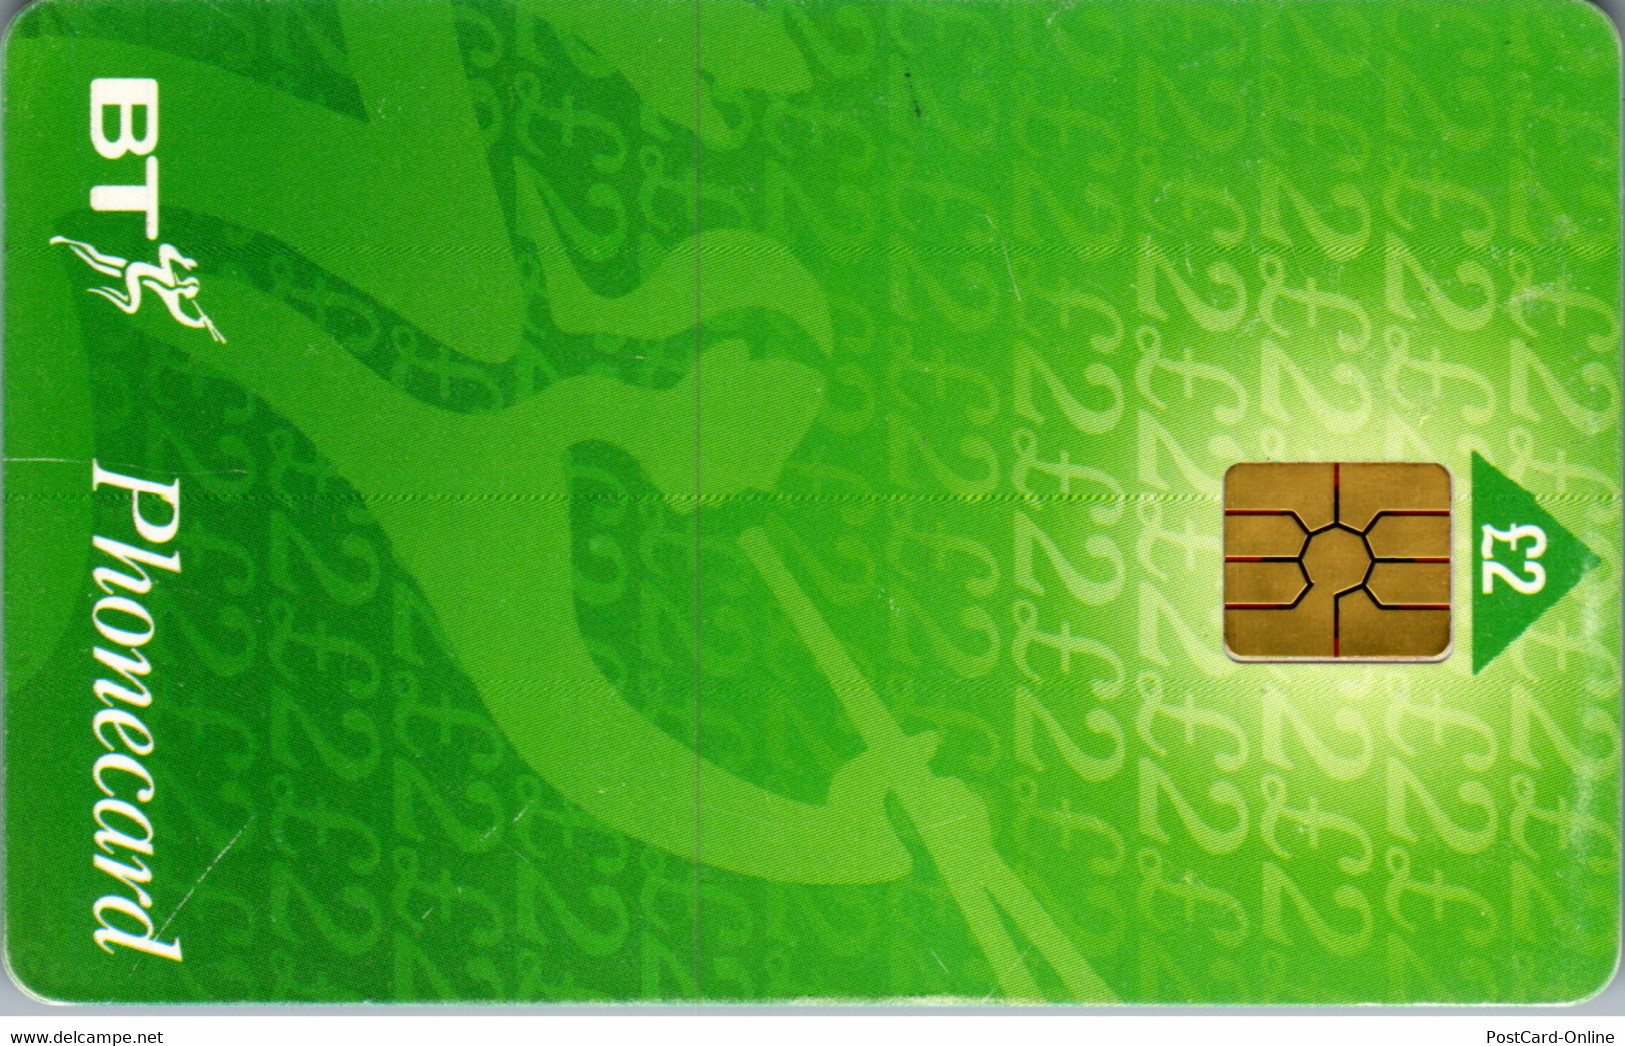 32543 - Großbritannien - BT Phonecard - BT Algemeen